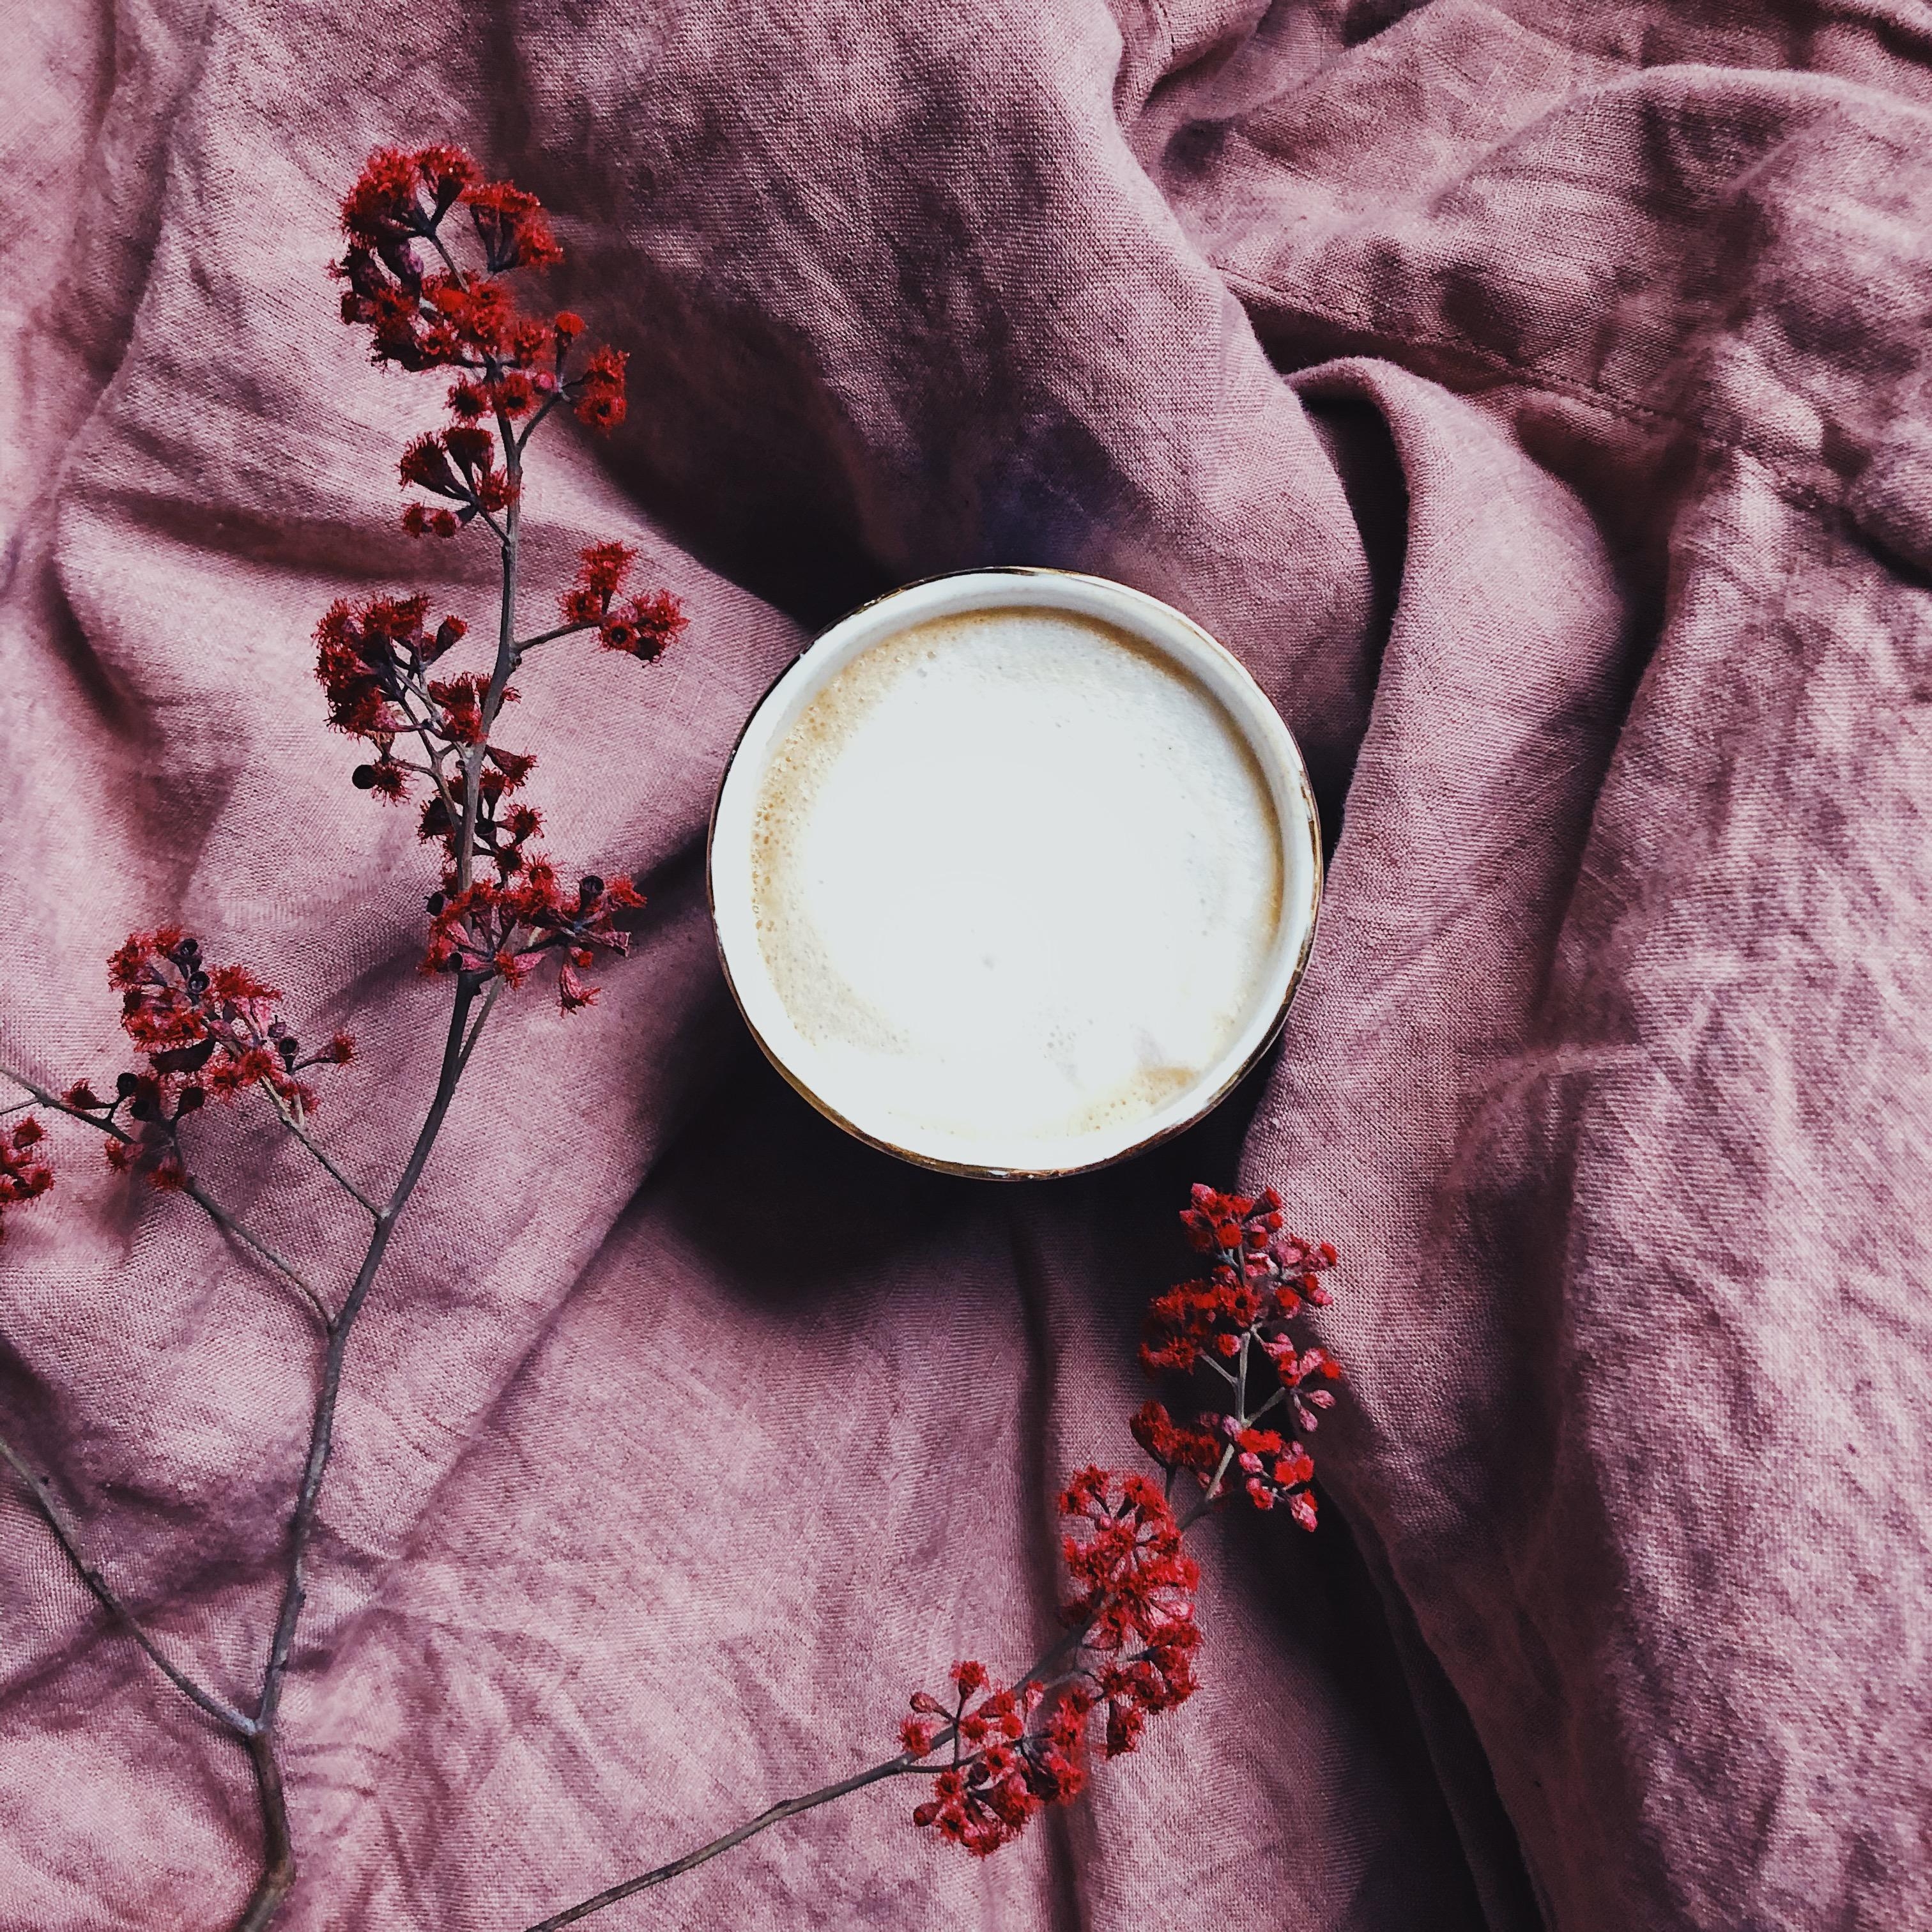 Hier geht gerade ohne Kaffee nüschte...
#Kaffee #Leinenbettwäsche #Trockenblumen #Kaffeeimbett